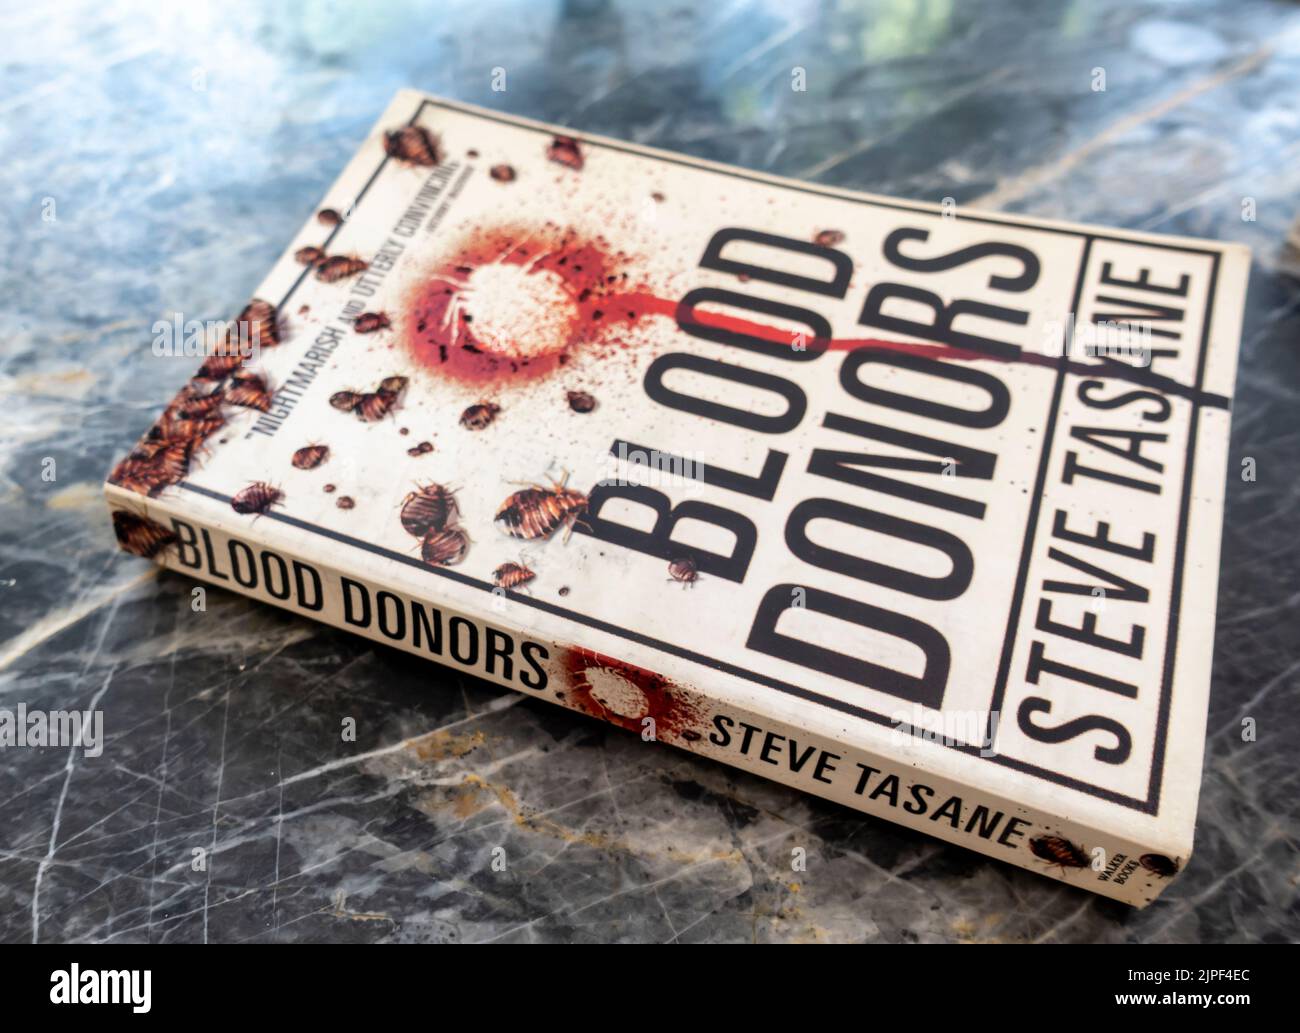 Blood Donors - Buch von Steve Tasane 2013 Stockfoto